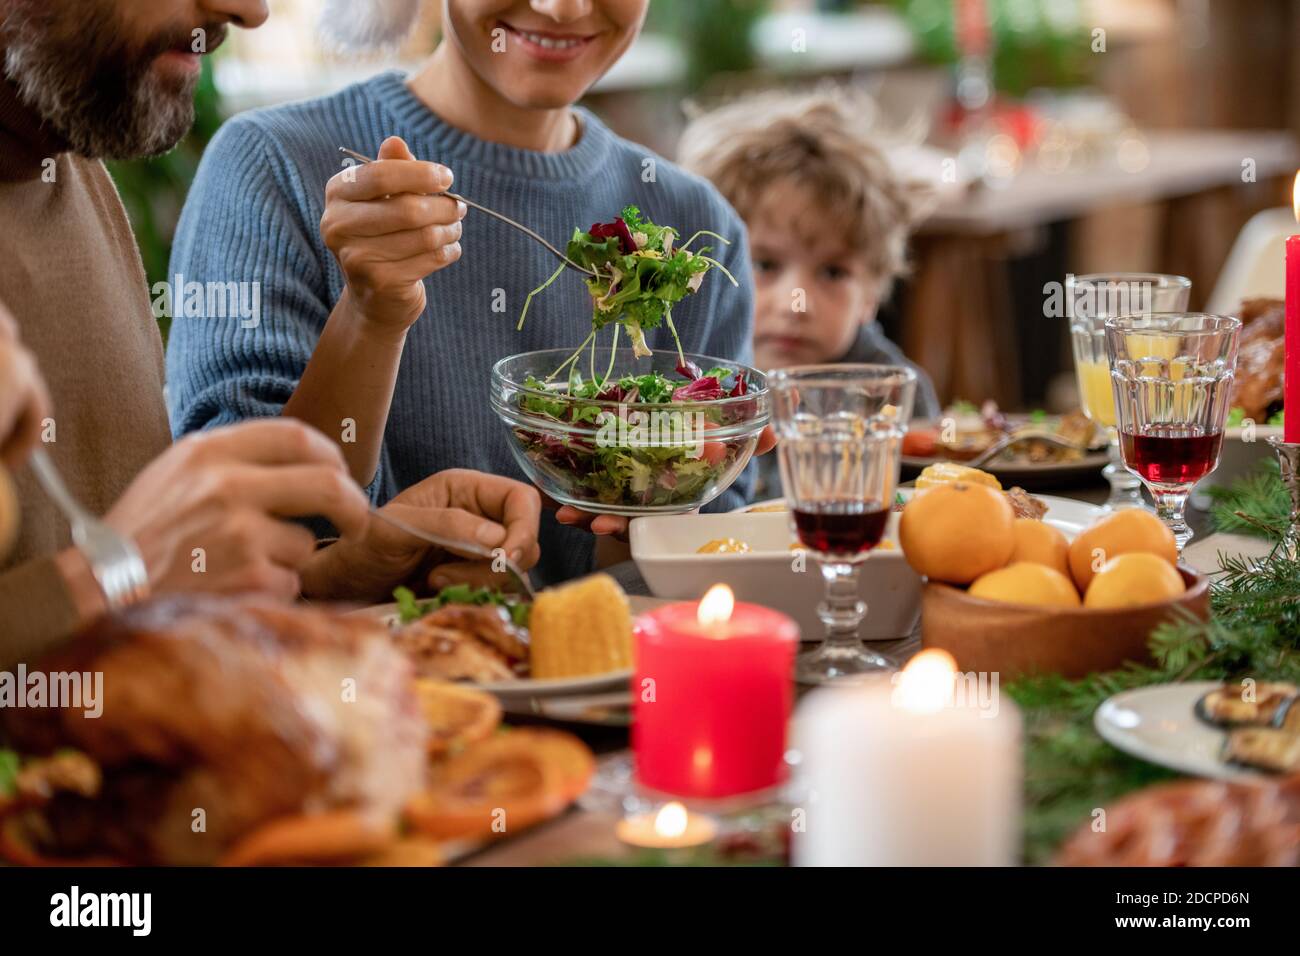 Junge lächelnde Frau, die Gemüsesalat aus der Schüssel auf den Teller legt Ihres Mannes Stockfoto